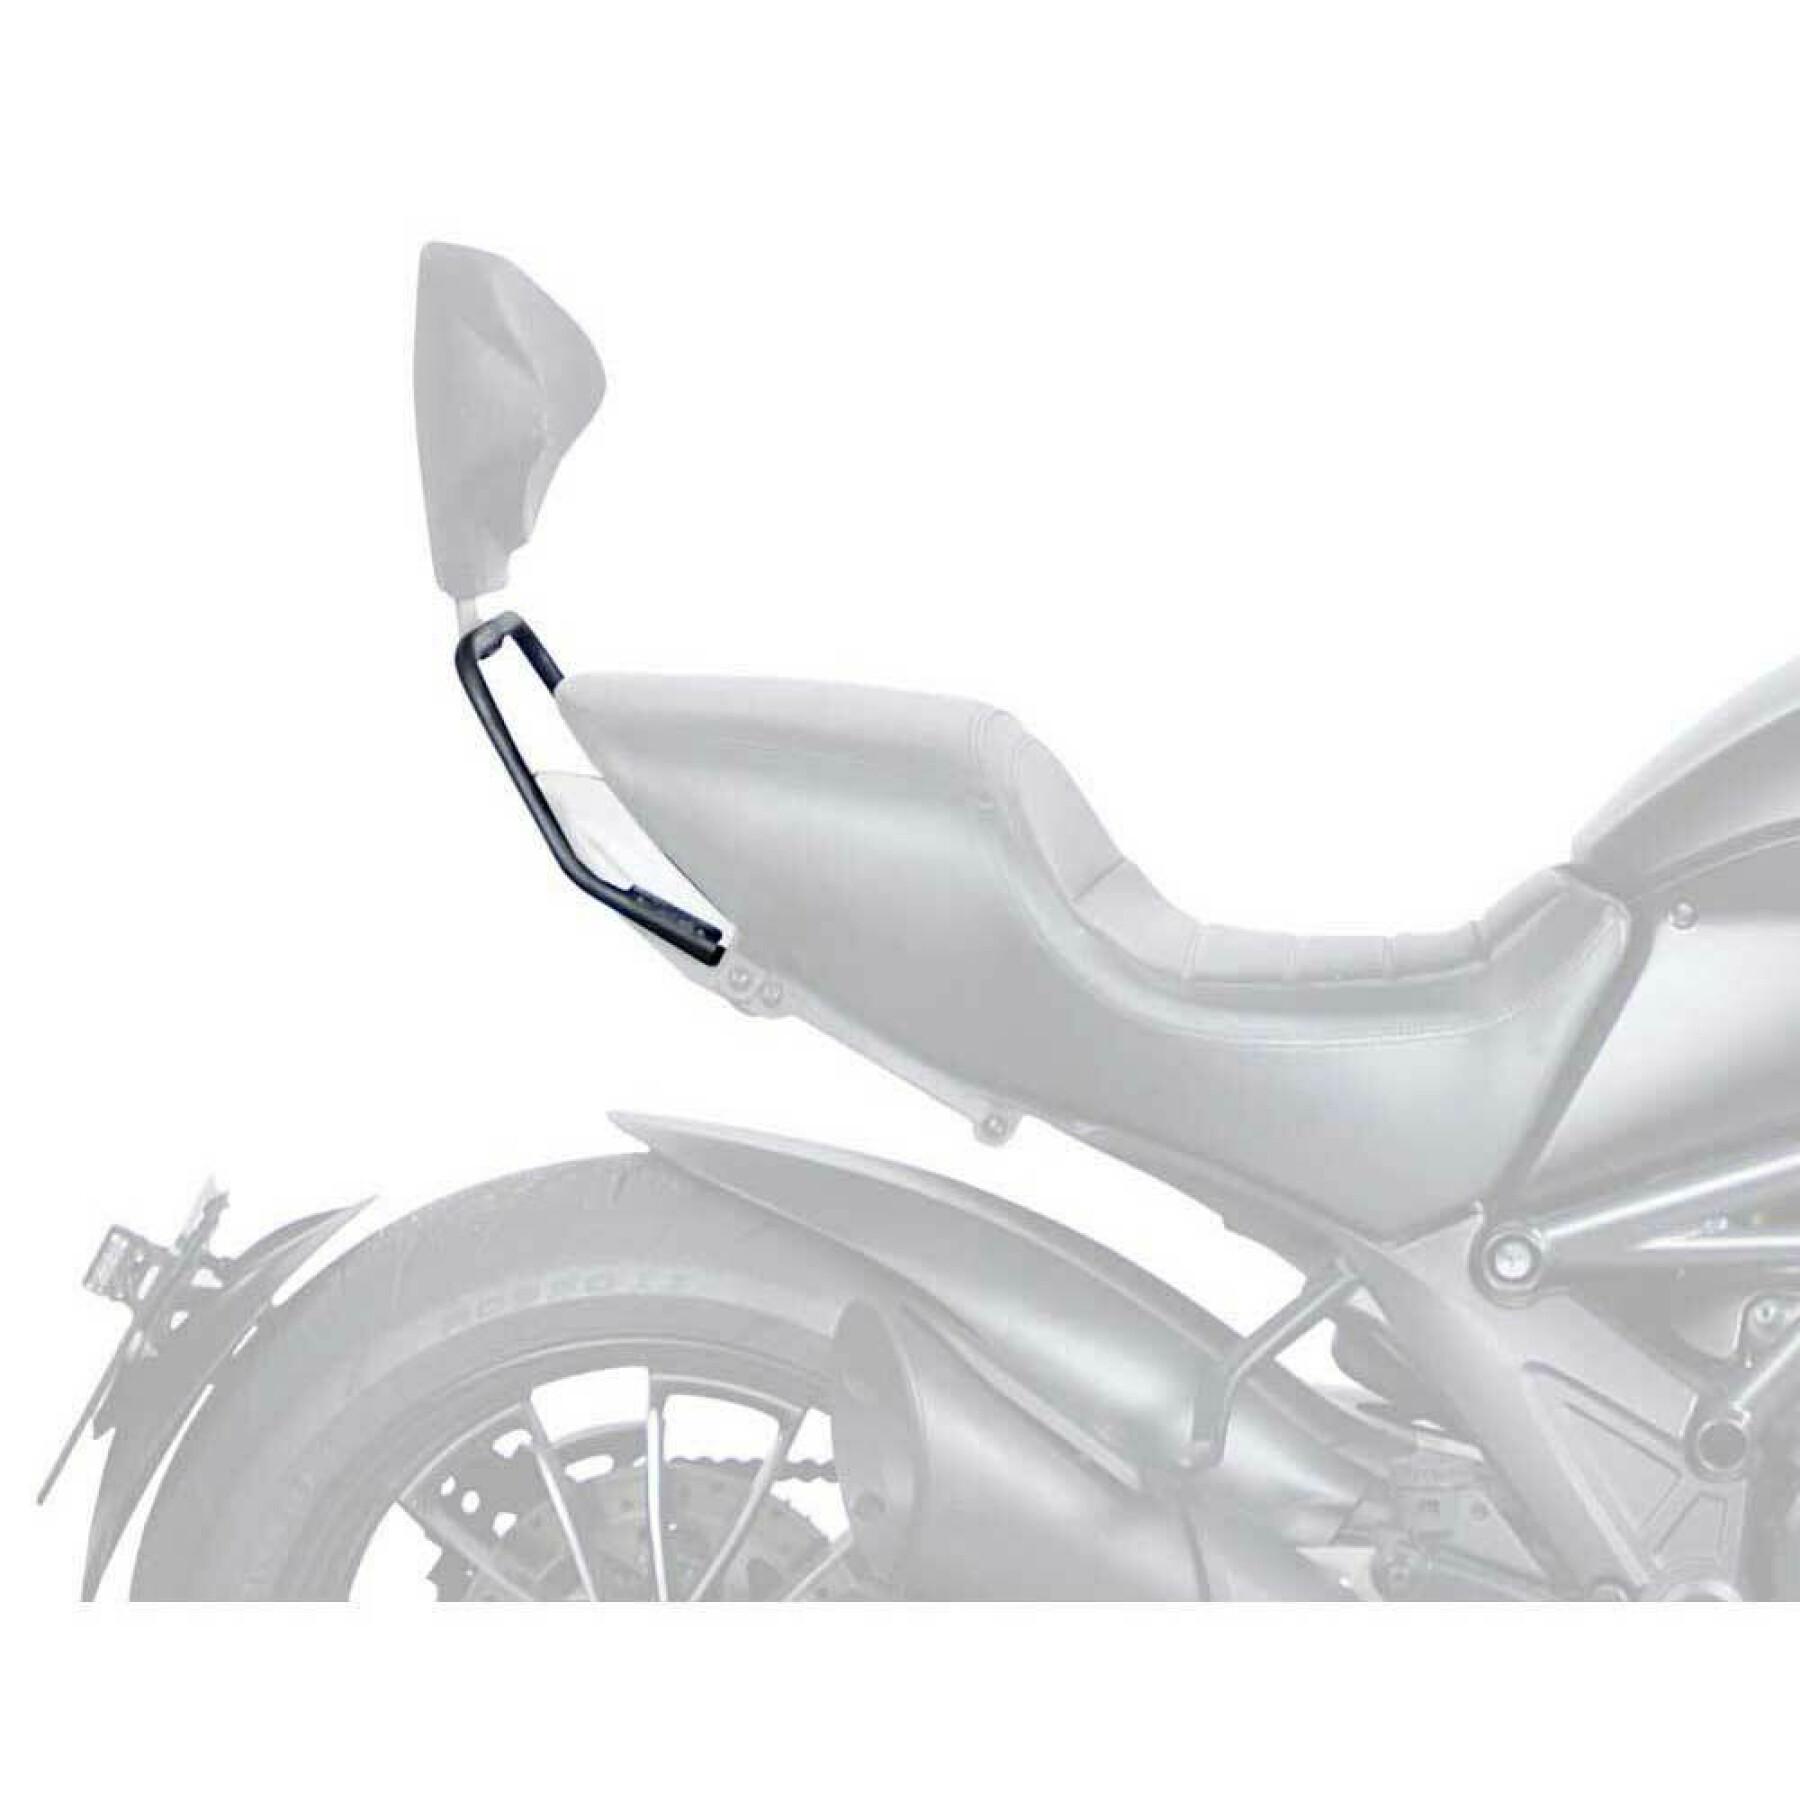 Montering av ryggstöd för motorcykel Shad Ducati diavel 1200